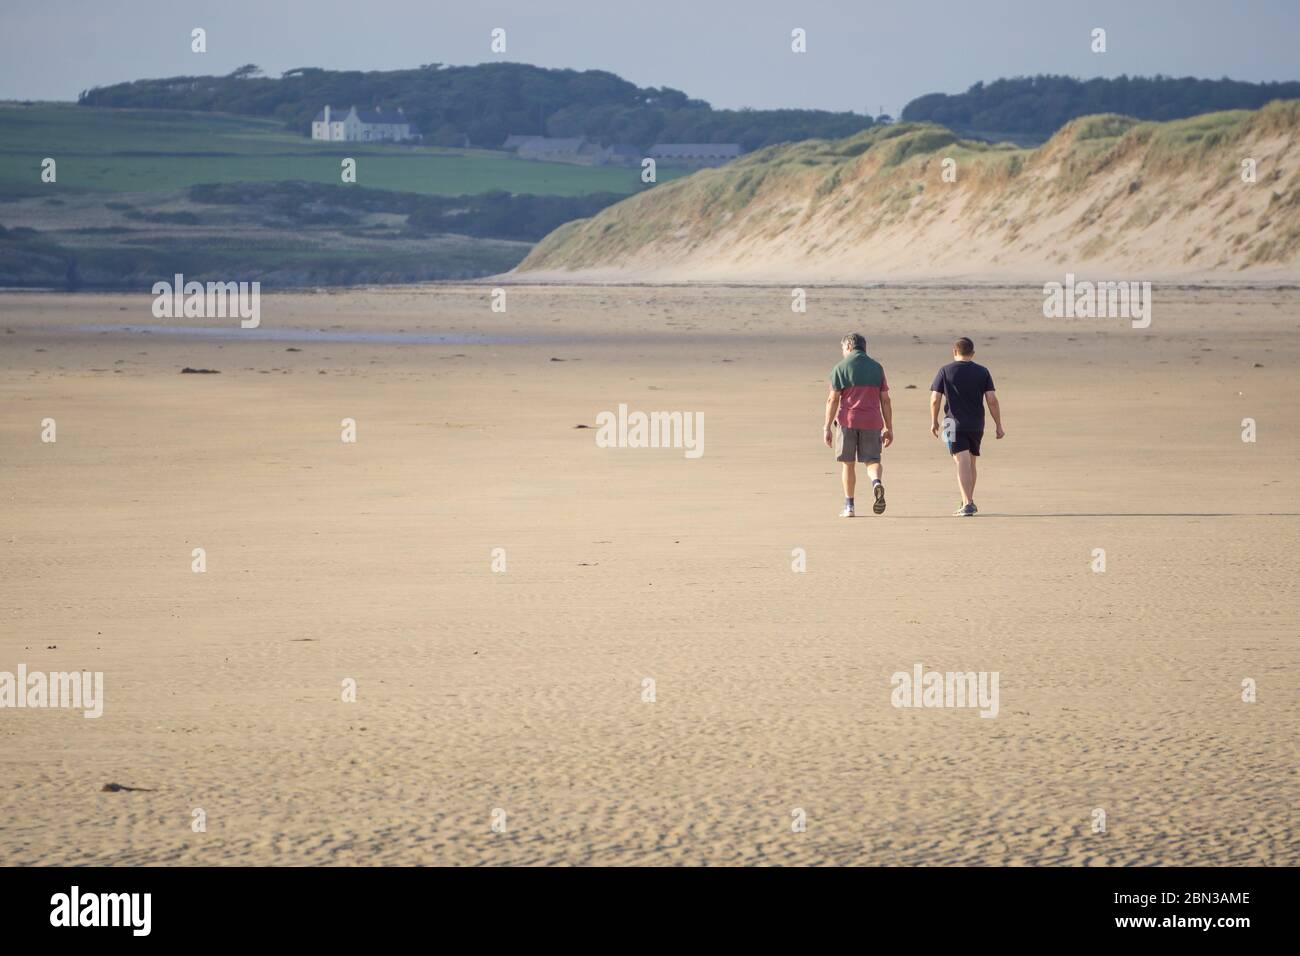 Isolation am leeren, menschenleeren Newborough Beach. Vater und Sohn gehen zusammen für die tägliche Bewegung auf isolierten britischen Strand. Sommerurlaub in Großbritannien. Stockfoto